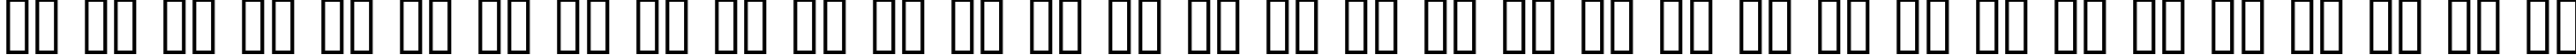 Пример написания русского алфавита шрифтом Rediviva